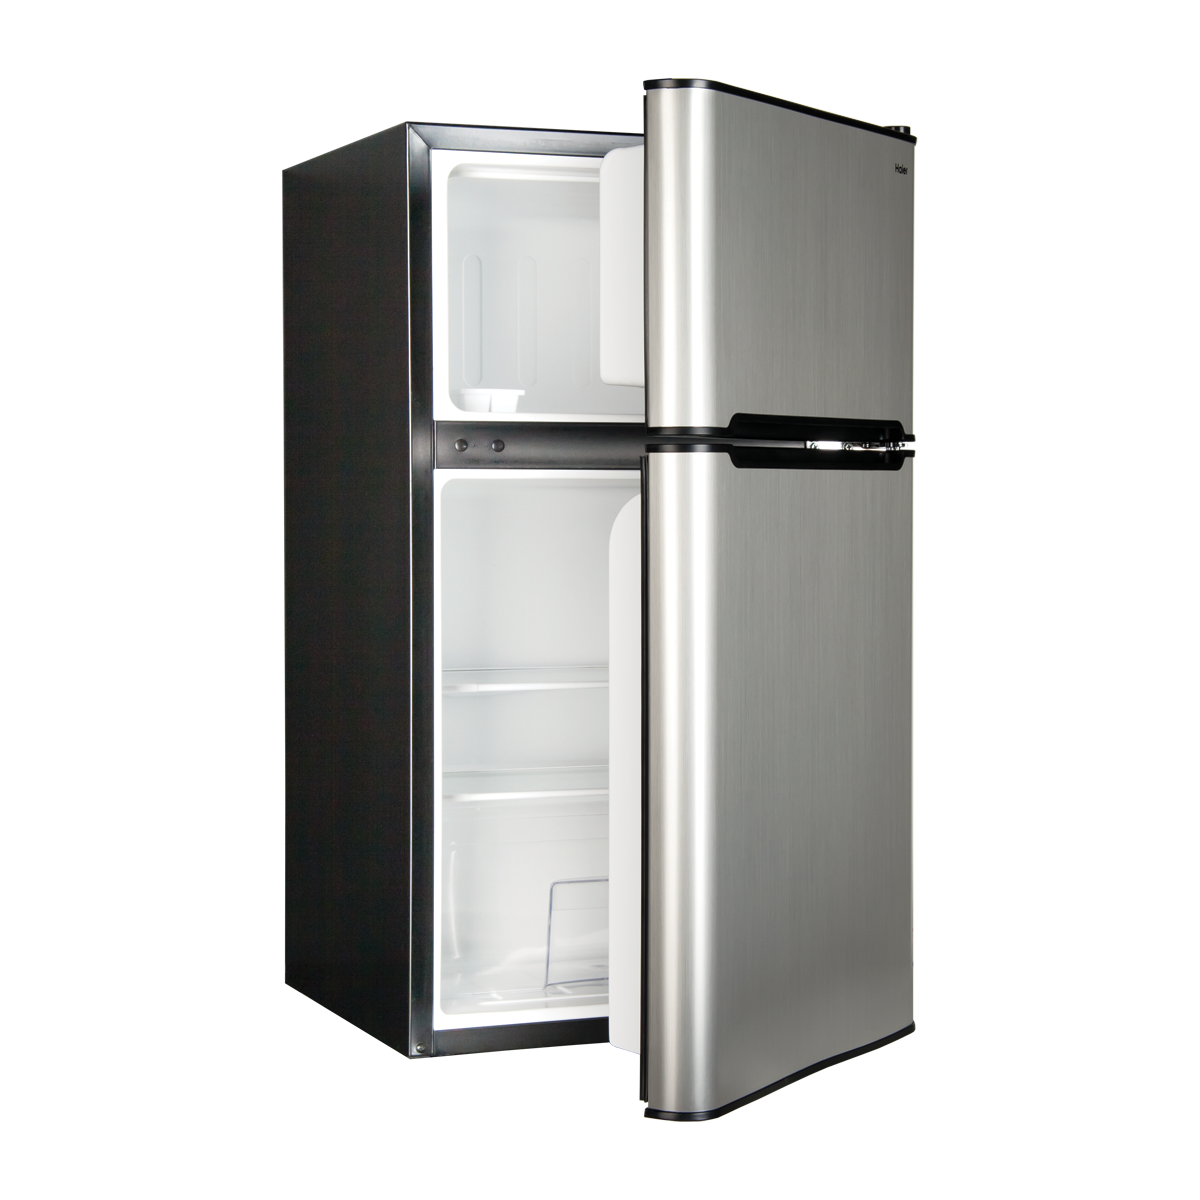 Refrigerator Download Transparent PNG Image